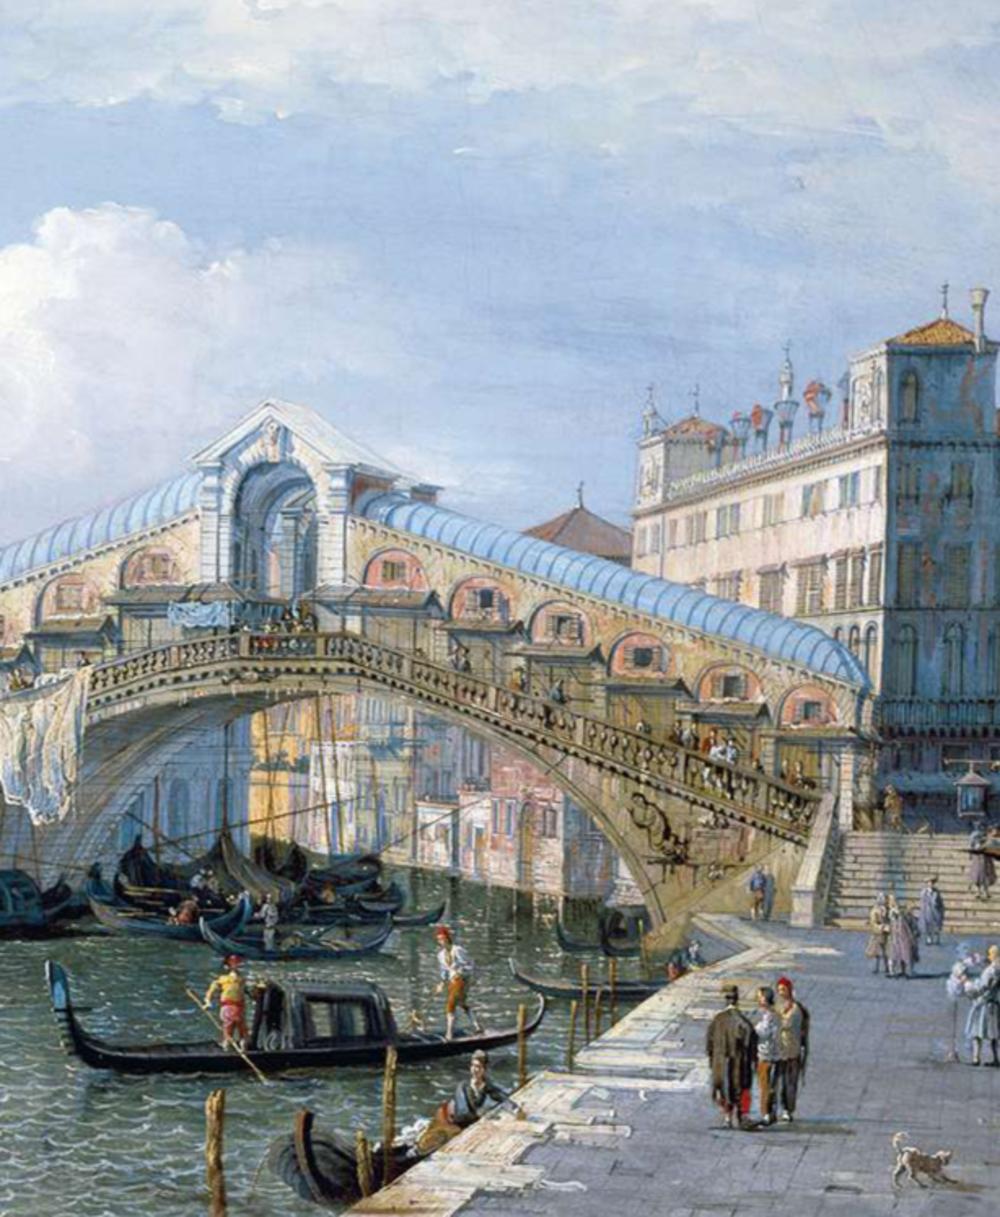 De Rialtobrug, tussen 1588 en 1592 gebouwd door Antonio da Ponte, was lange tijd de enige brug over het Canal Grande (schilderij van Canaletto, vóór 1750).